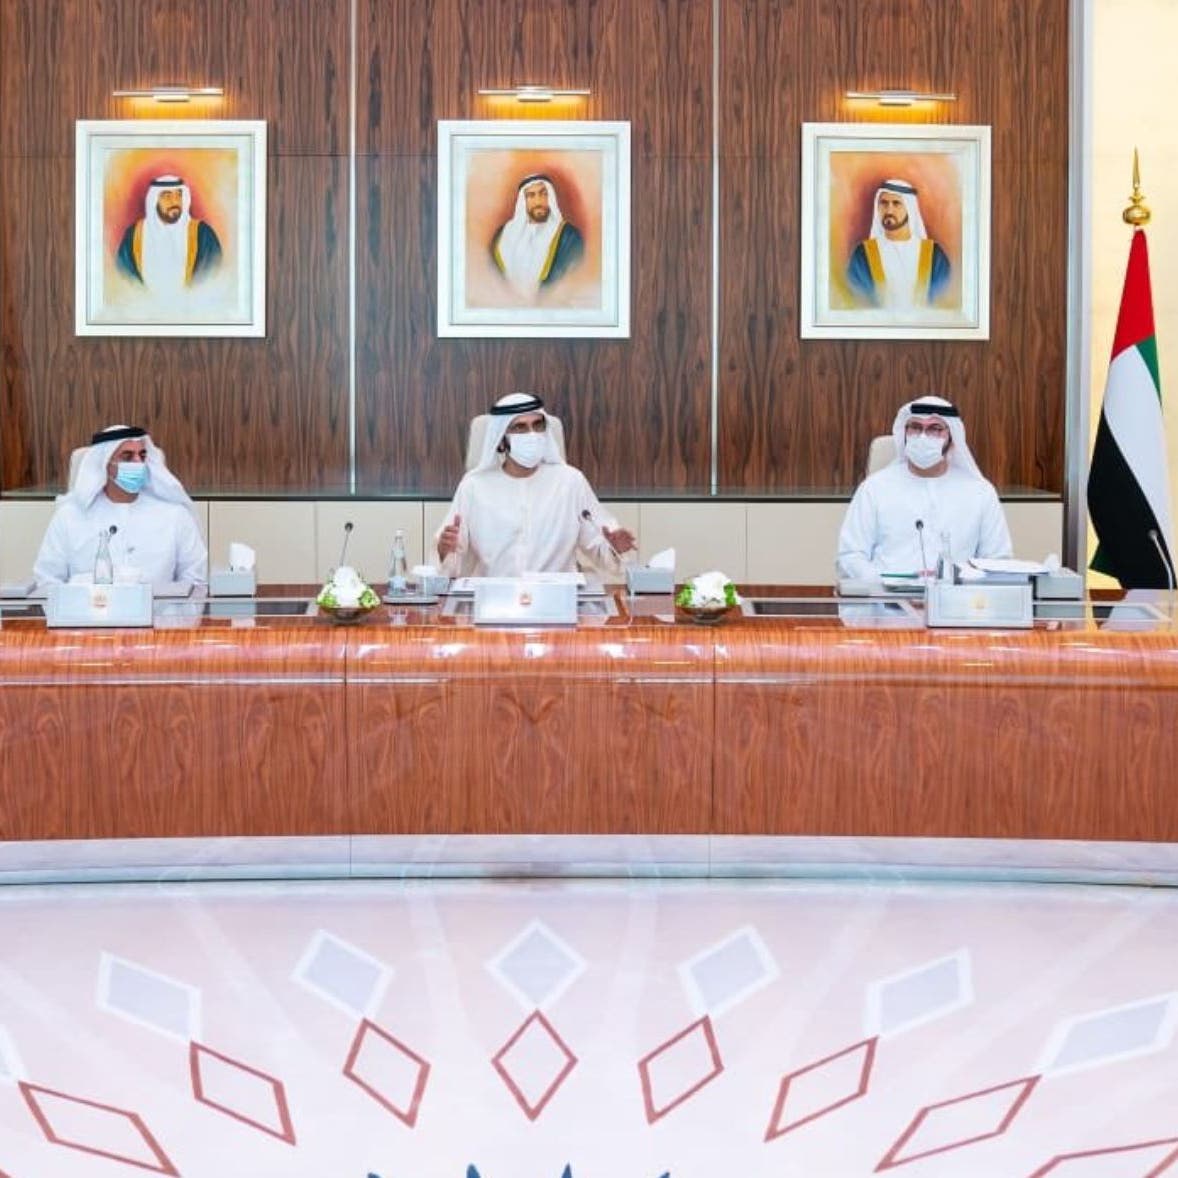 الإمارات تعتمد ميزانية اتحادية بمصروفات 15.7 مليار دولار لعام 2021 